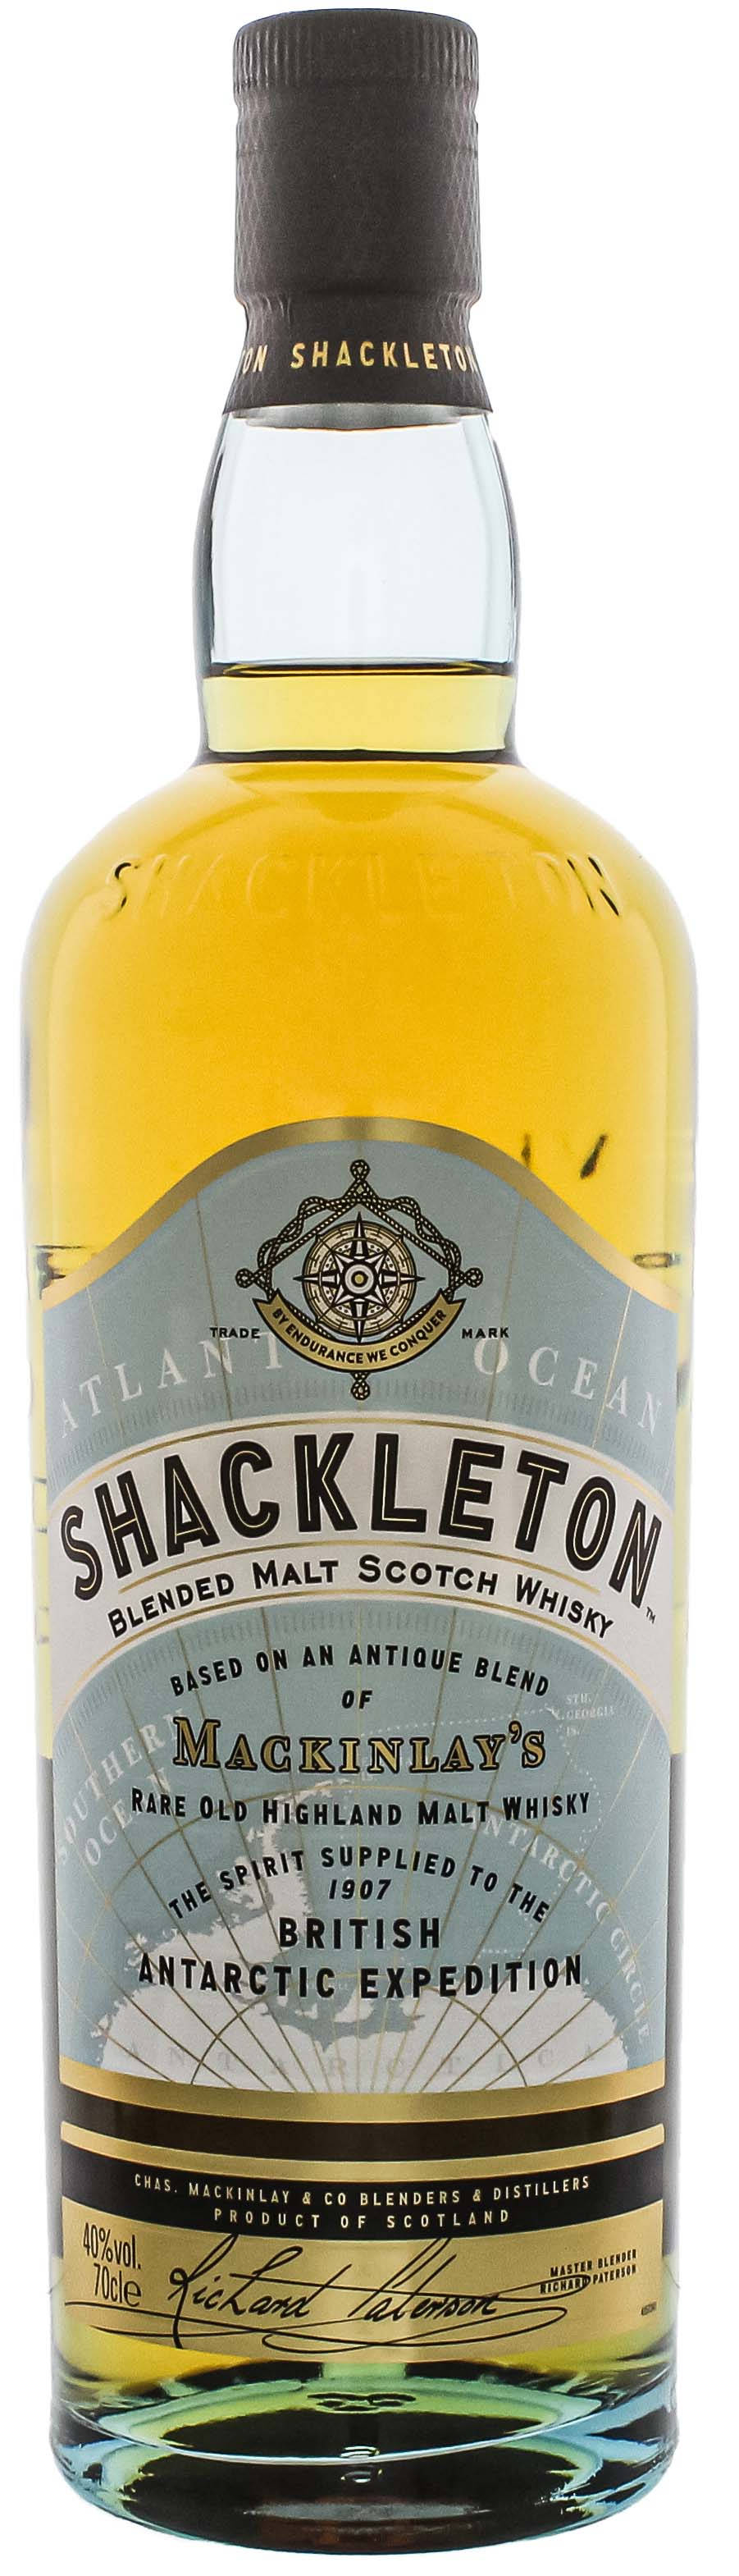 Mackinlaysantique Blend Shackleton Whisky Wallpaper